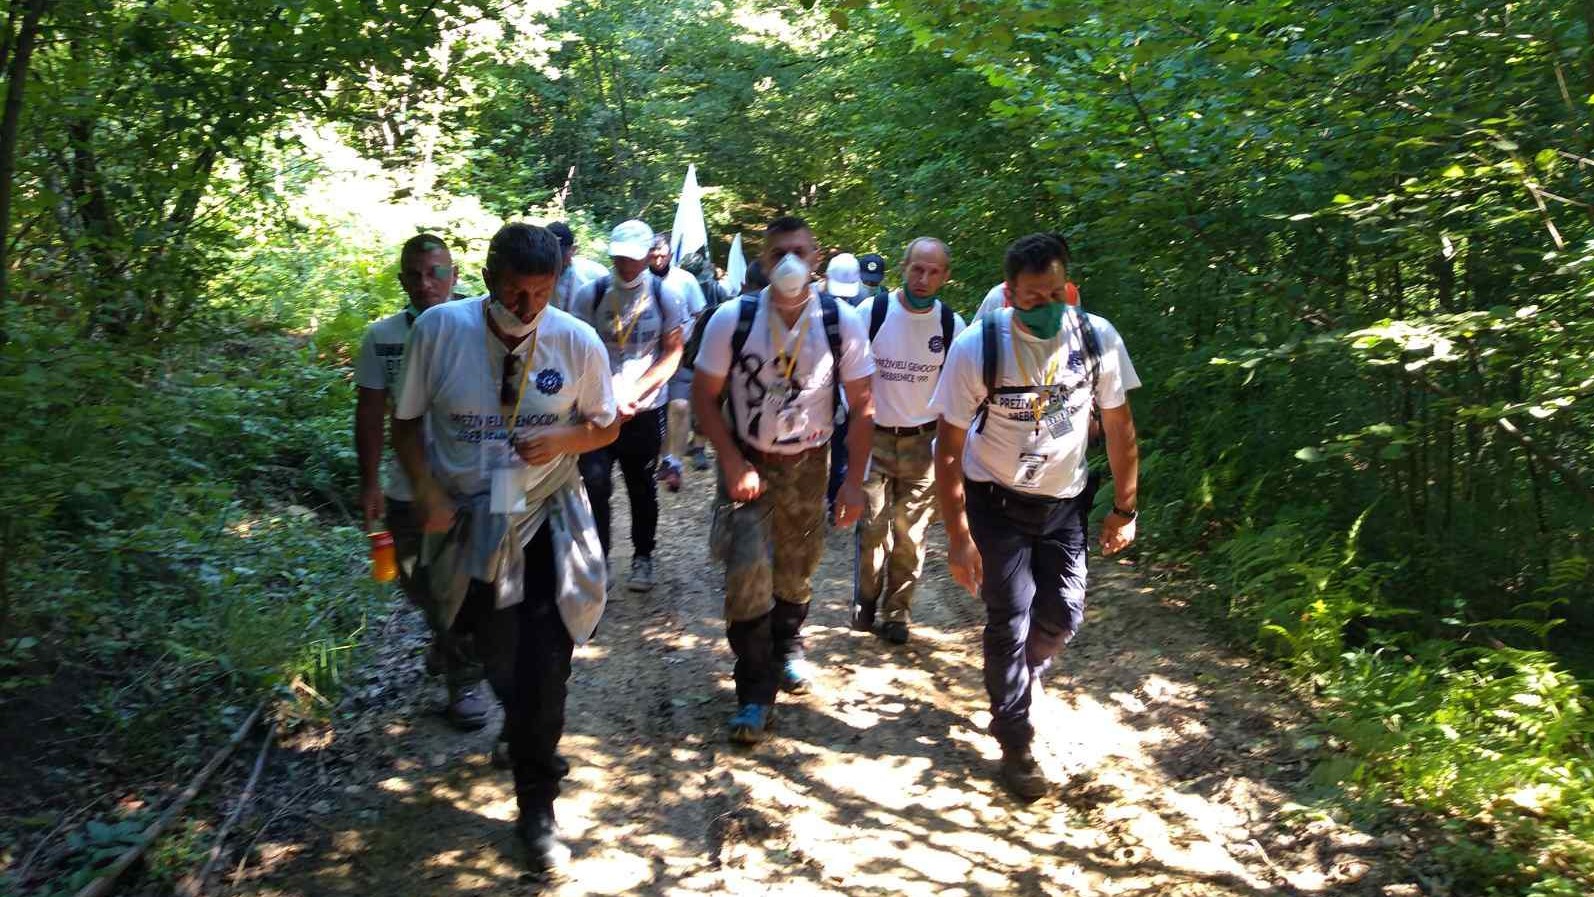 Drugi dan Marša mira: Prelazak preko planine Udrč u čijim se šumama kriju teška sjećanja